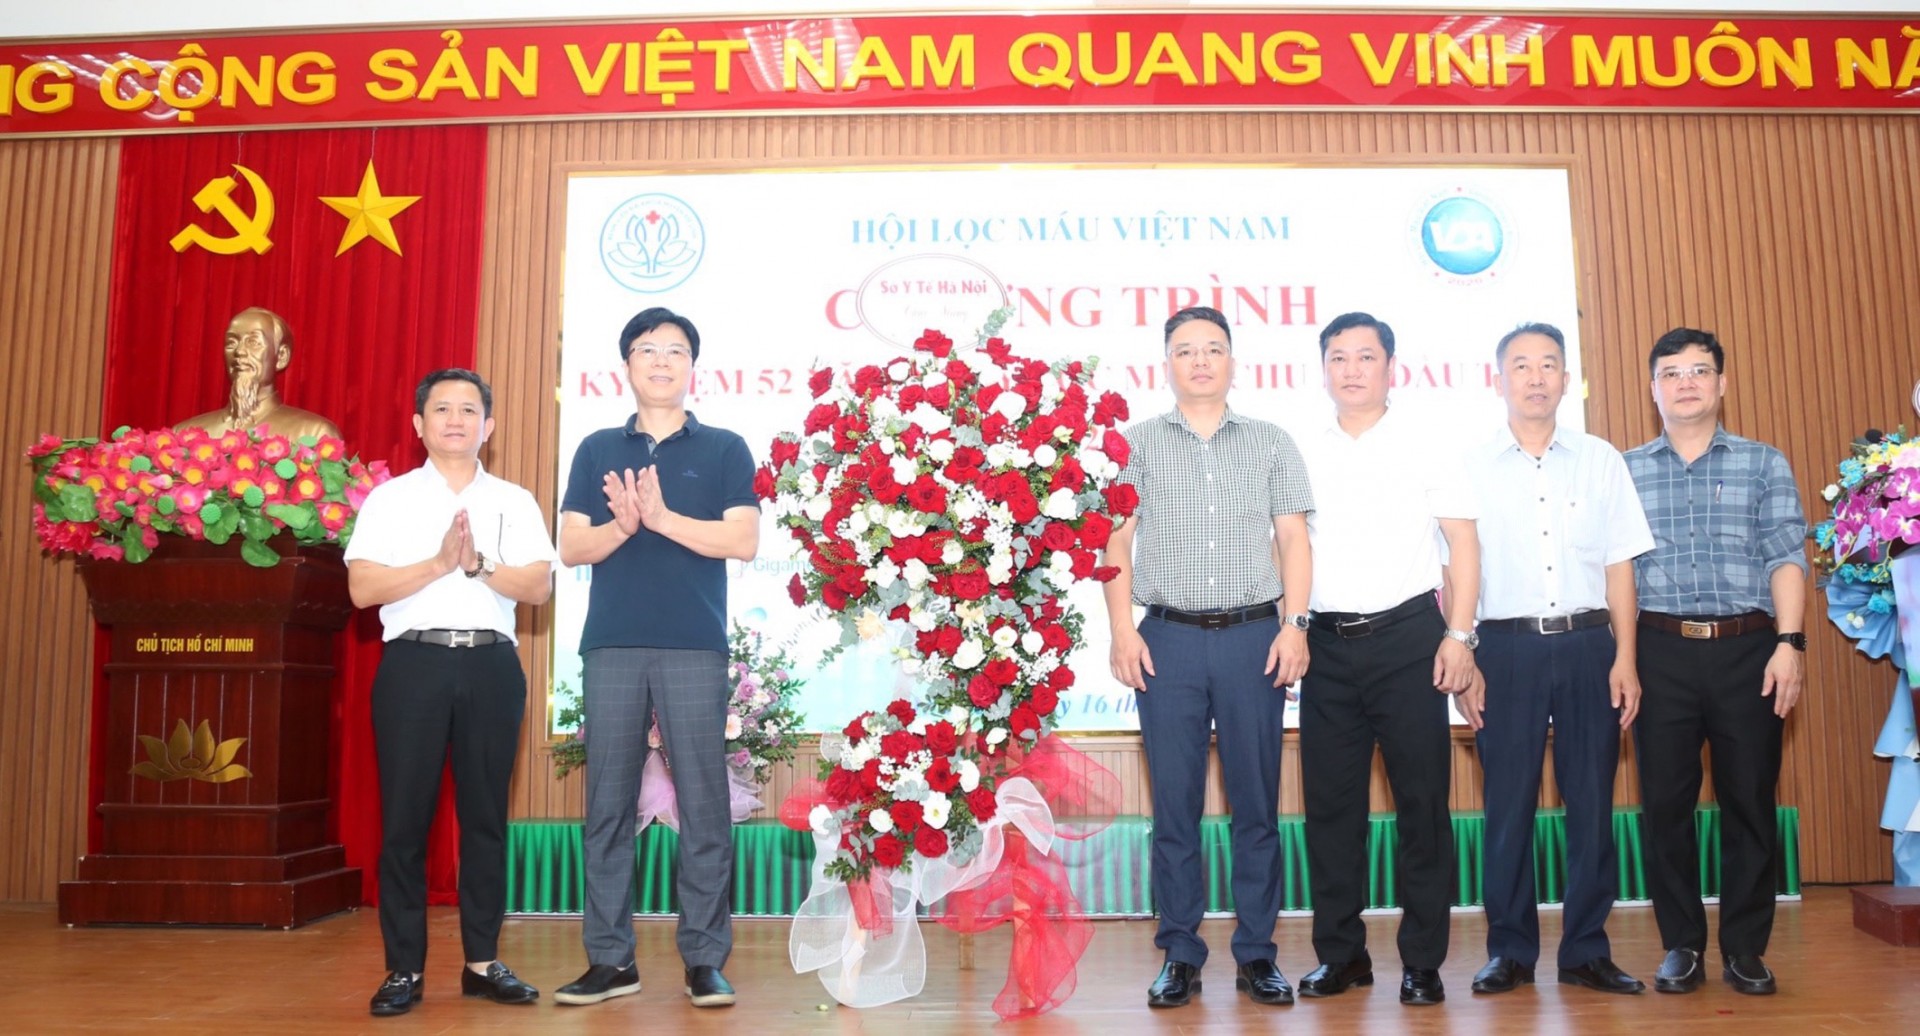 Hội lọc máu Việt Nam và Bệnh viện Đa khoa Mê Linh: Nâng cao điều trị chạy thận nhân tạo